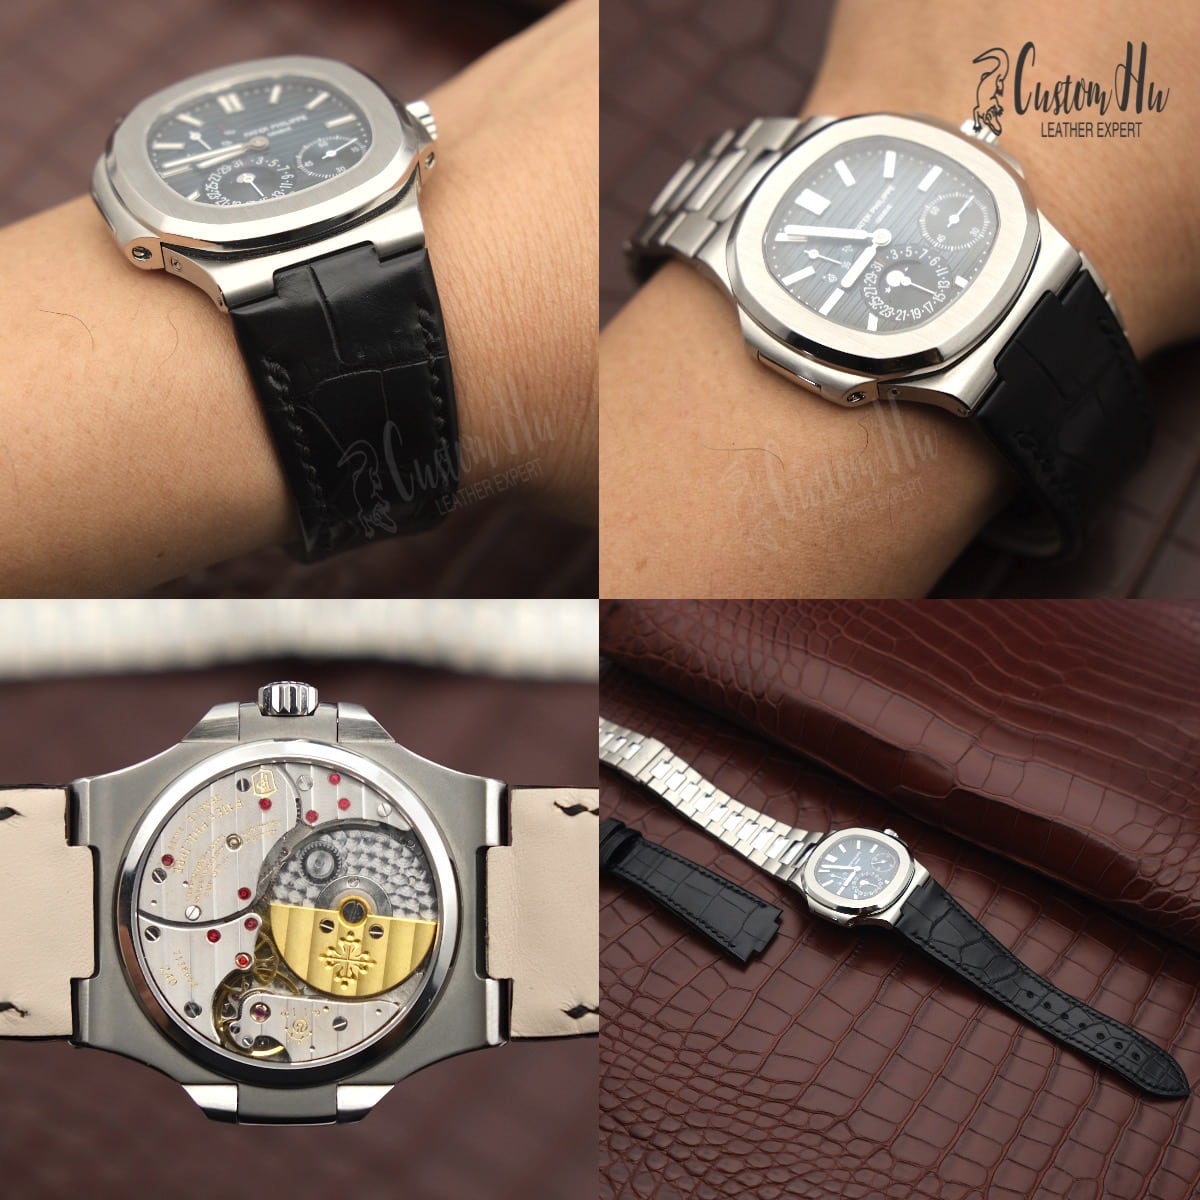 Benutzerdefiniertes Luxusarmband für Ihre Uhren Benutzerdefiniertes Uhrenarmband Unterstützt jeden Stil und jede Farbe